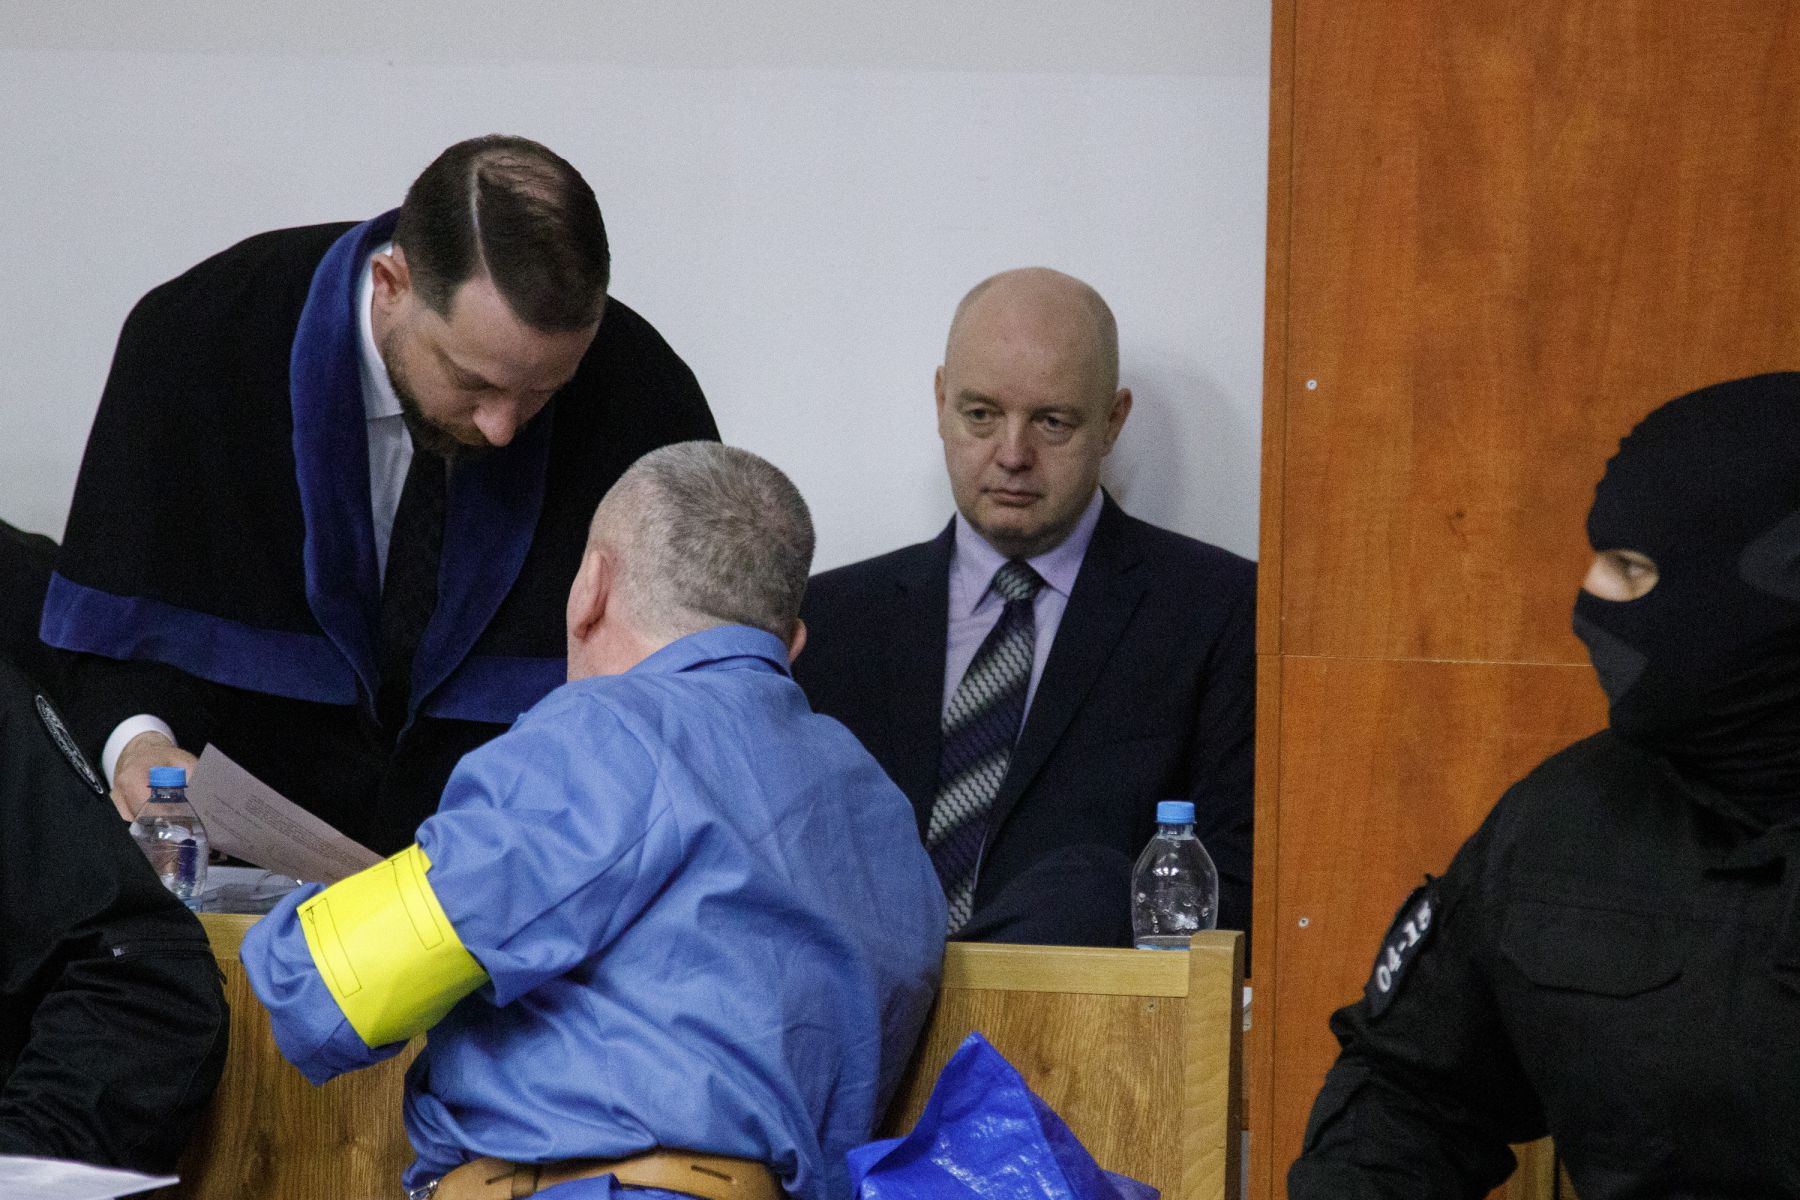 Aktualizované: Začal sa súd s exministrom Ruskom v prípade objednávky vraždy Volzovej - Webnoviny.sk